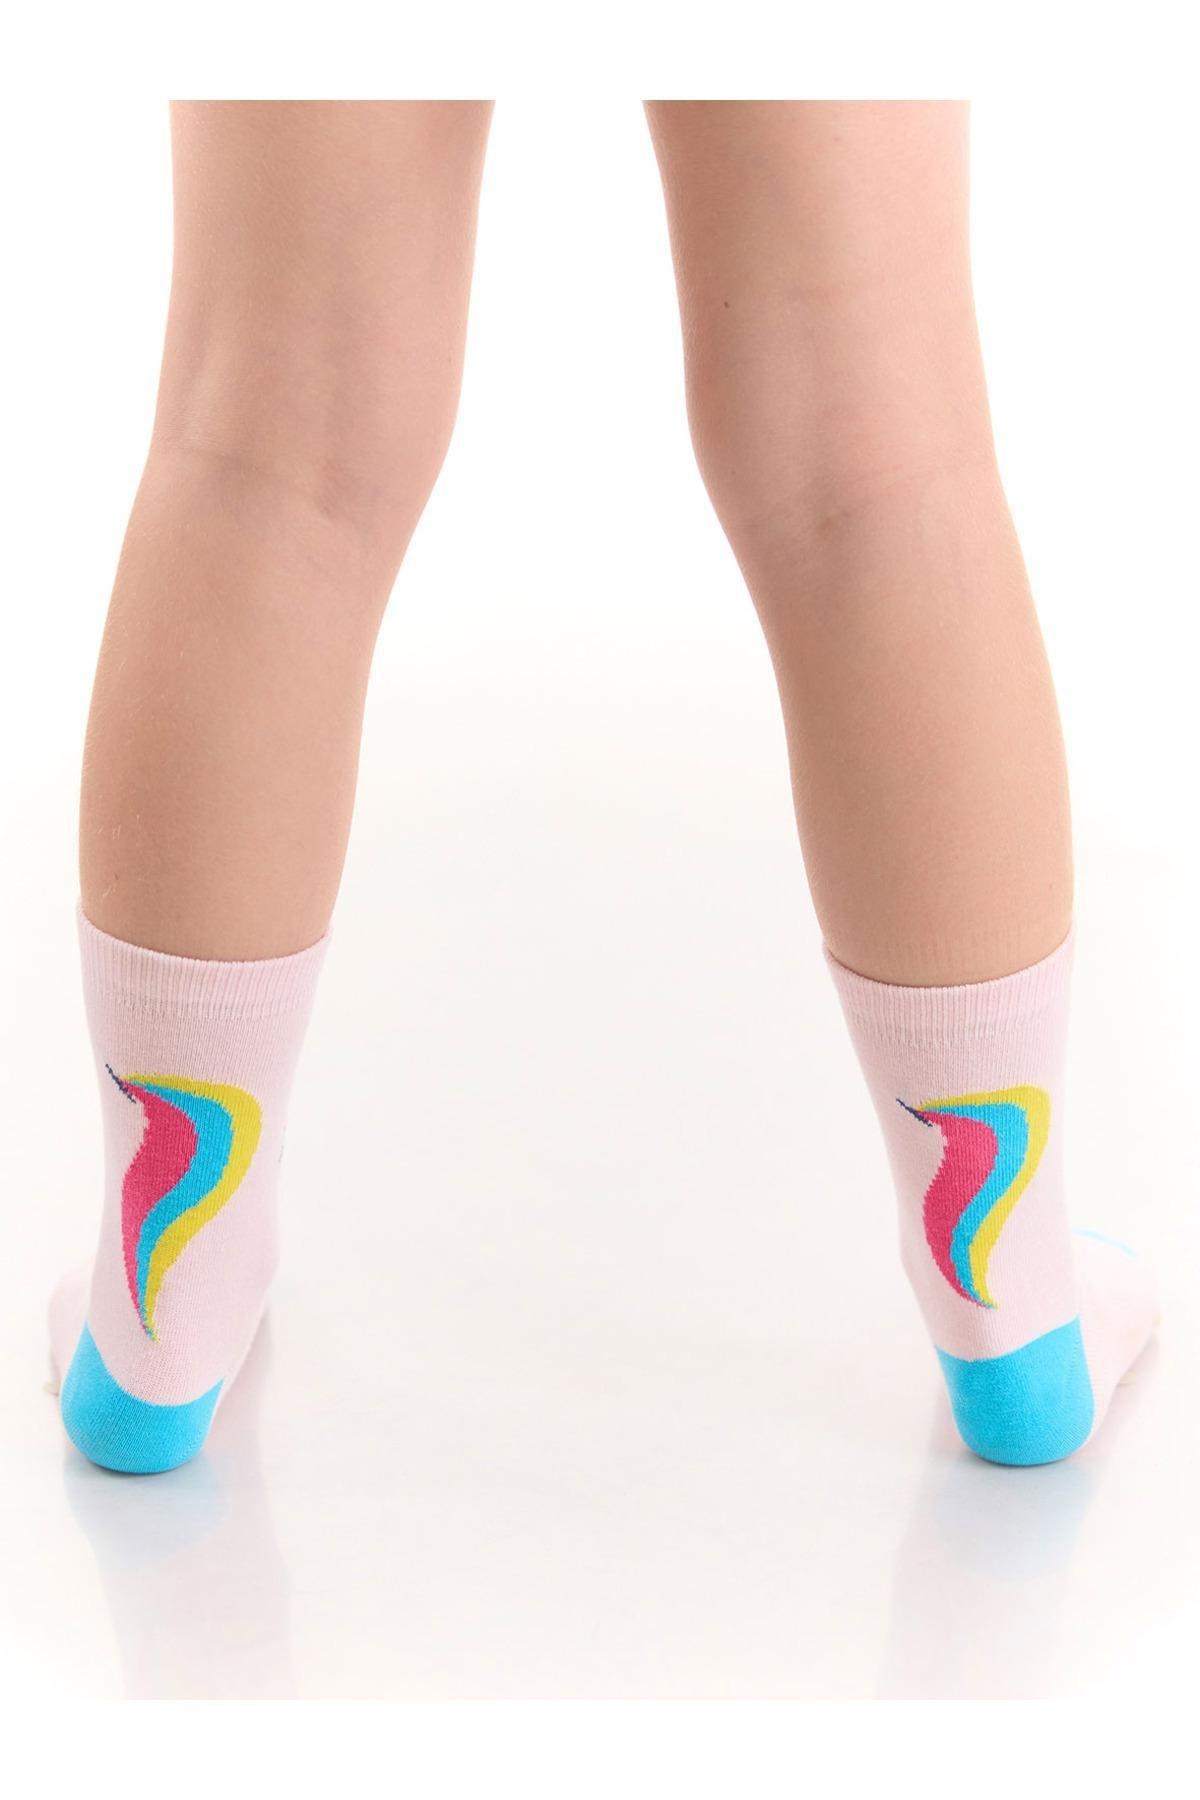 Denokids - Multicolour Printed Socks, Set Of 2, Kids Girls